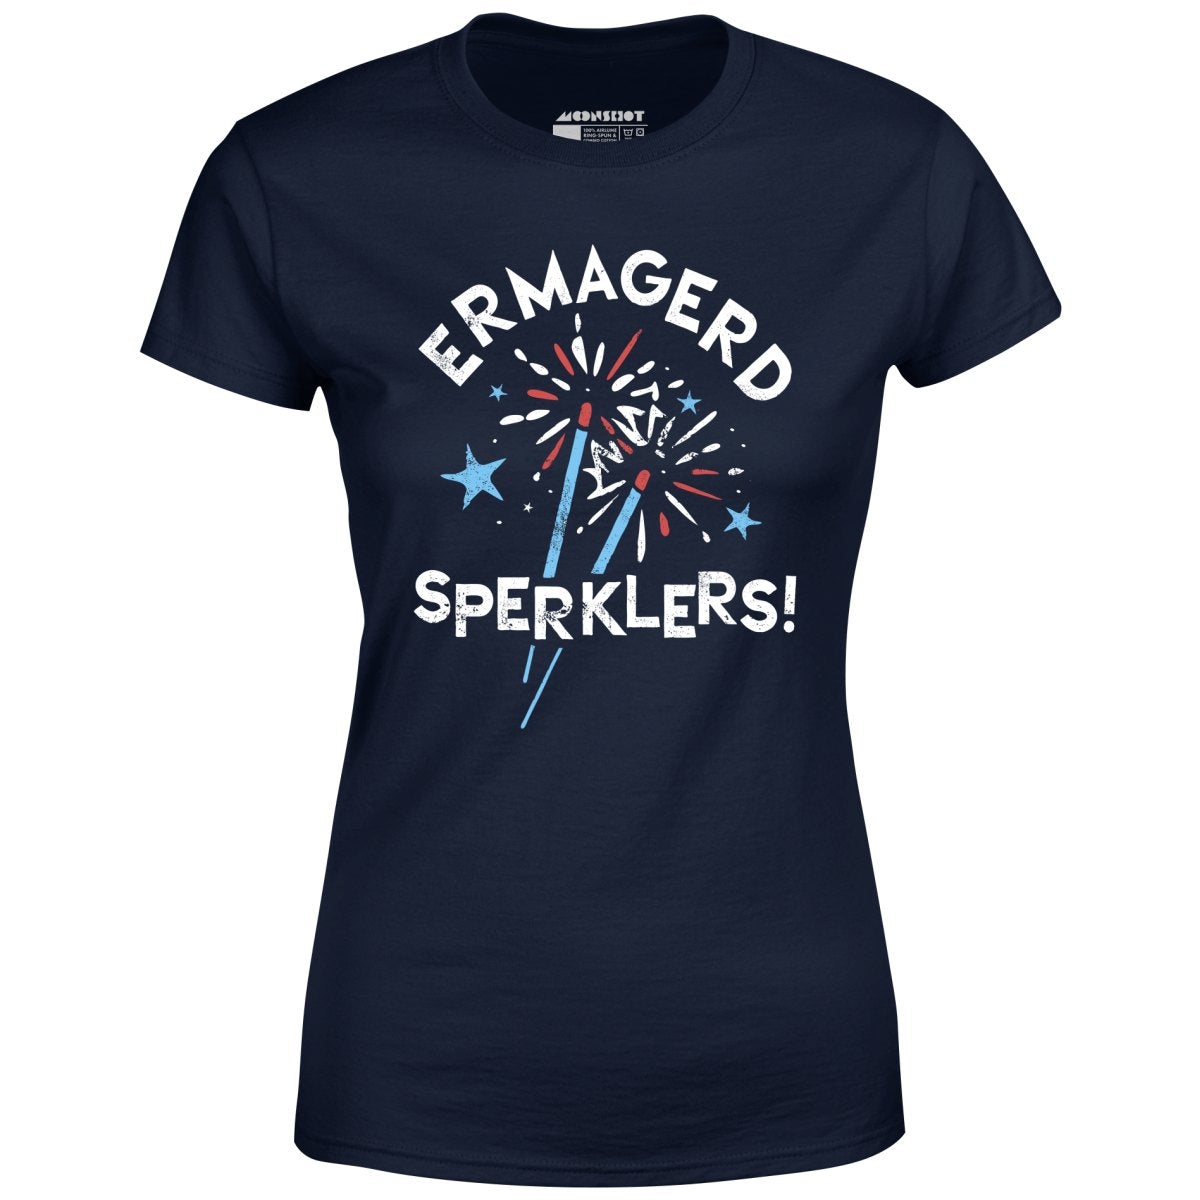 Ermagerd Sperklers! - Women's T-Shirt